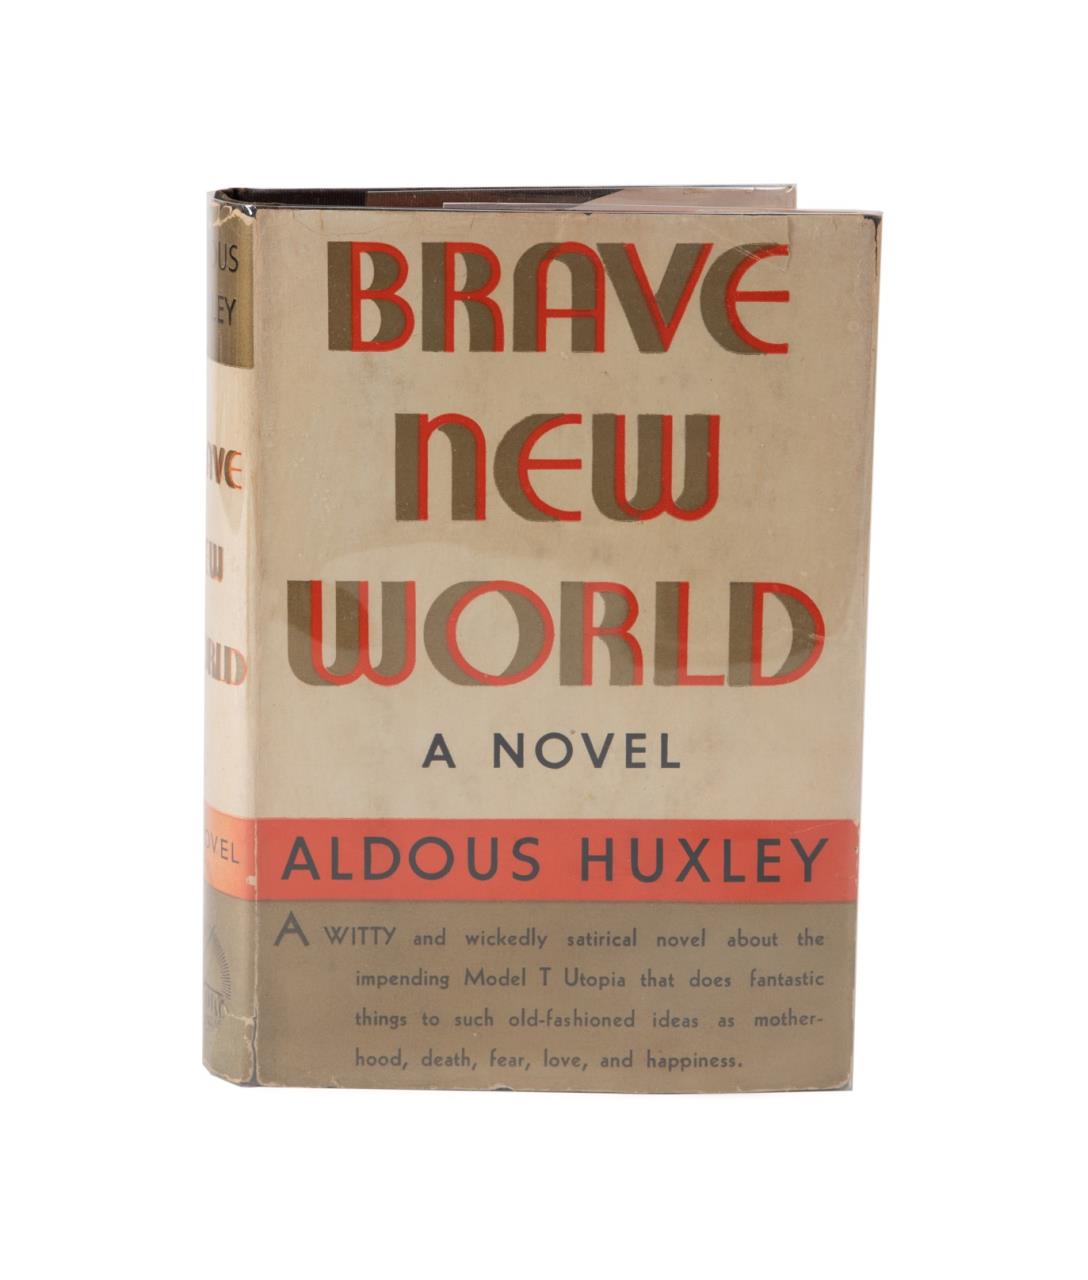 ALDOUS HUXLEY BRAVE NEW WORLD  2f9d34